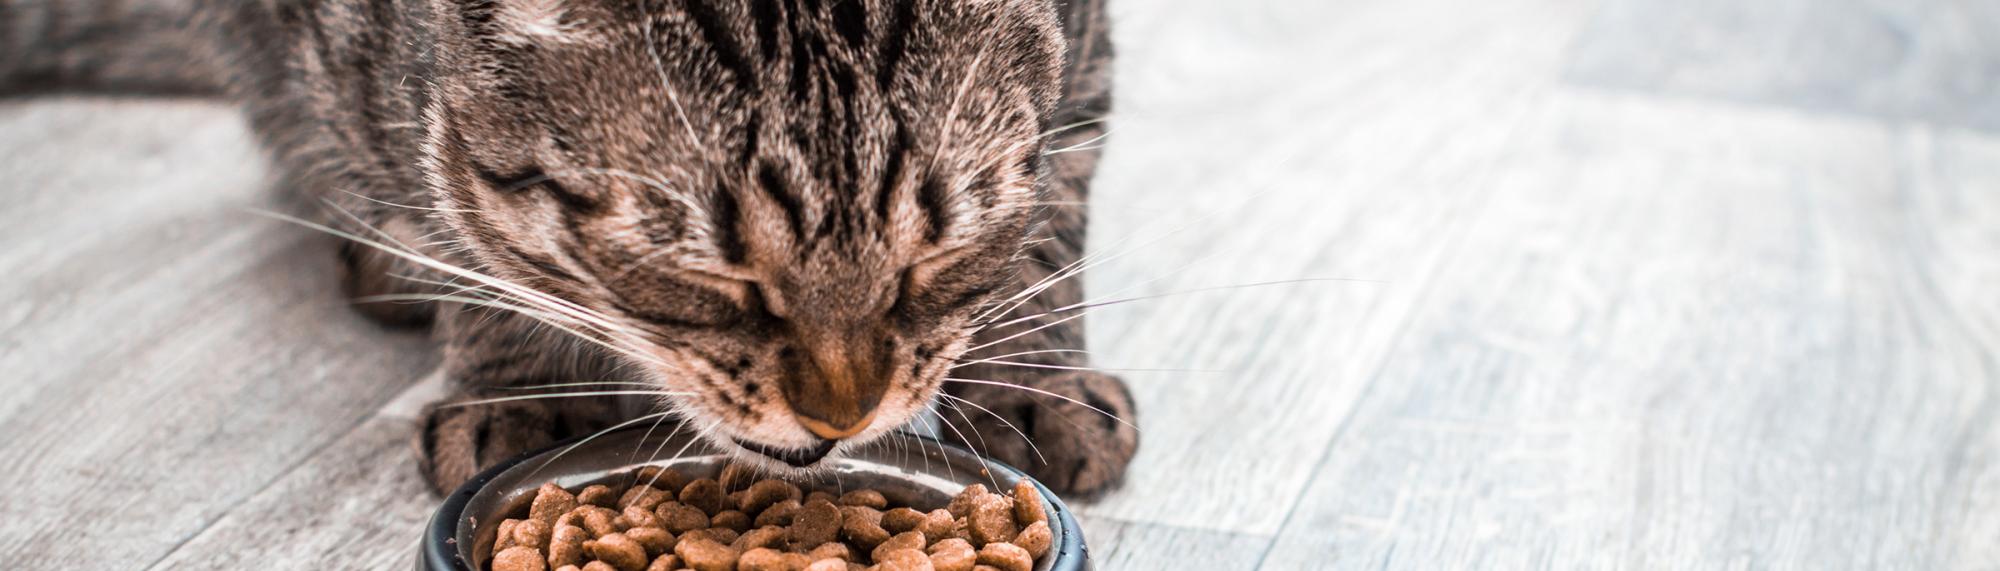 infirmationen und tipps zur ernährung von katzen